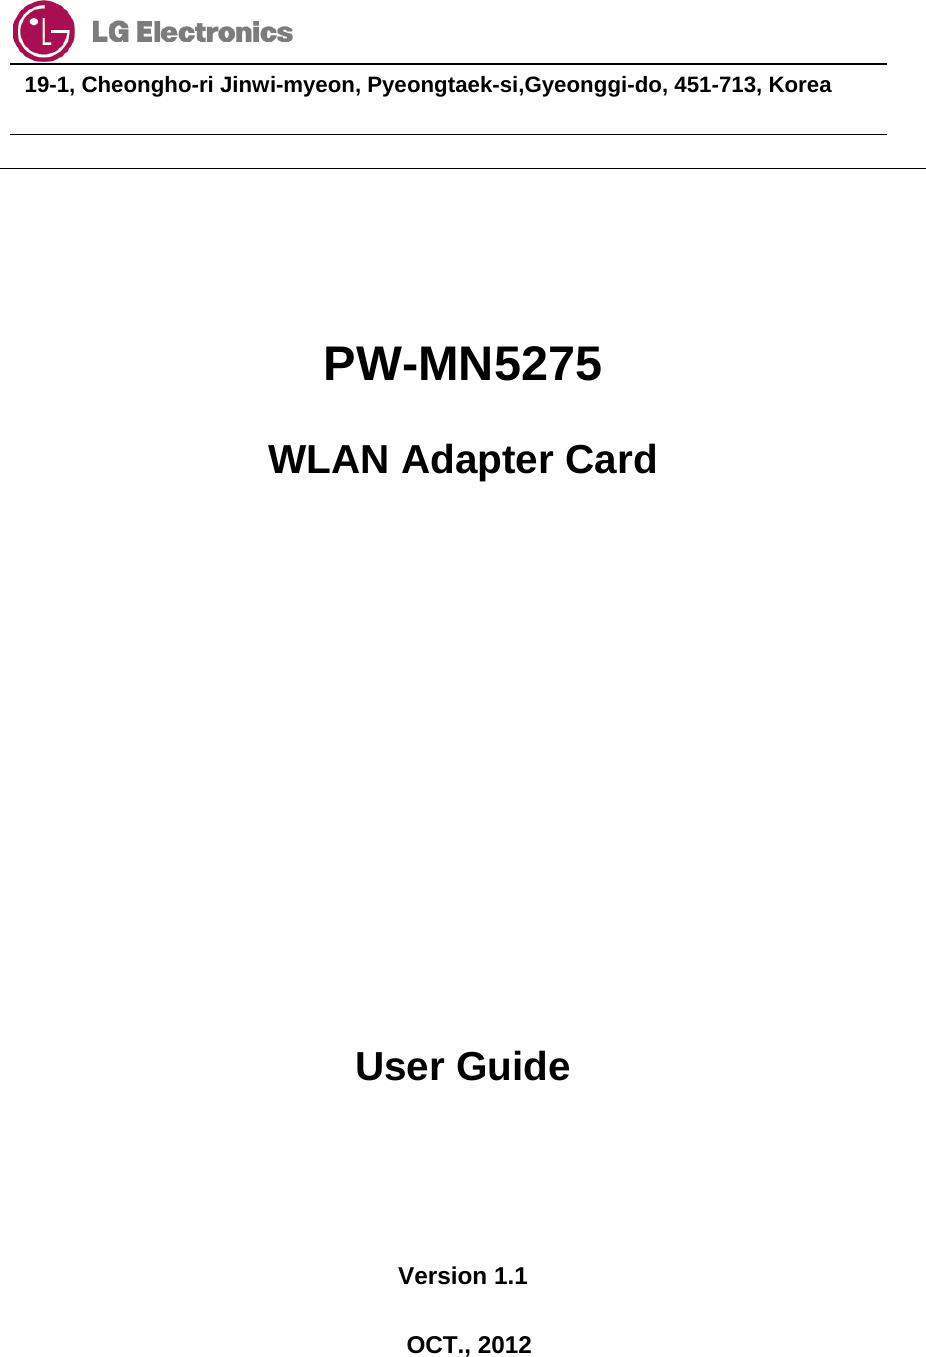                                  19-1, Cheongho-ri Jinwi-myeon, Pyeongtaek-si,Gyeonggi-do, 451-713, Korea        PW-MN5275 WLAN Adapter Card         User Guide   Version 1.1  OCT., 2012 